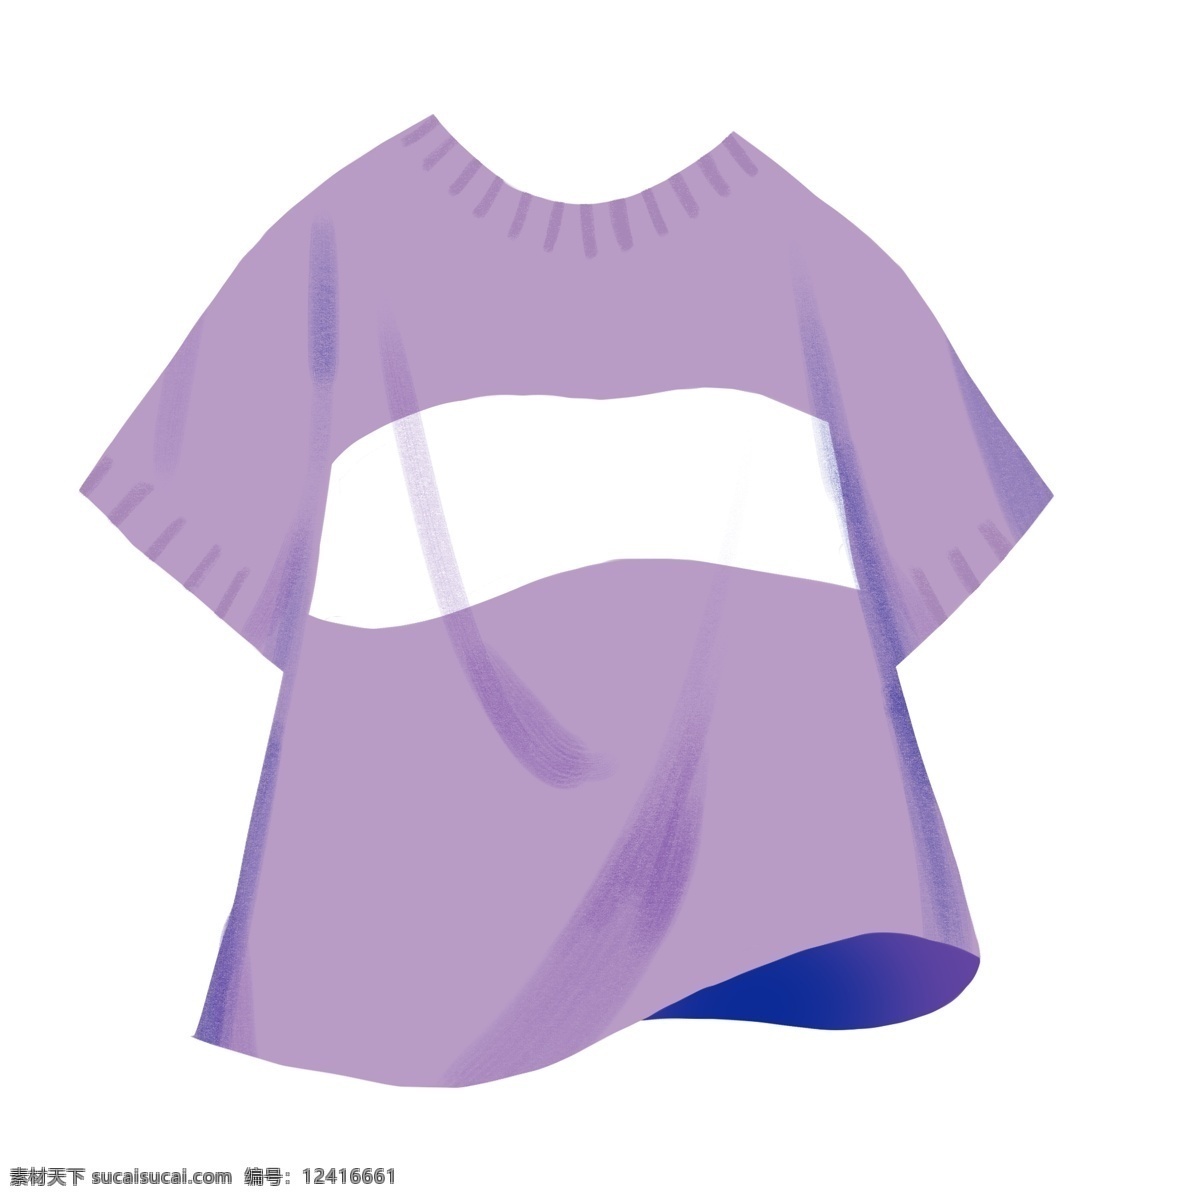 夏日 紫色 白条 可爱 印花 短袖 生活 t恤 卡通 手绘 插画 装饰